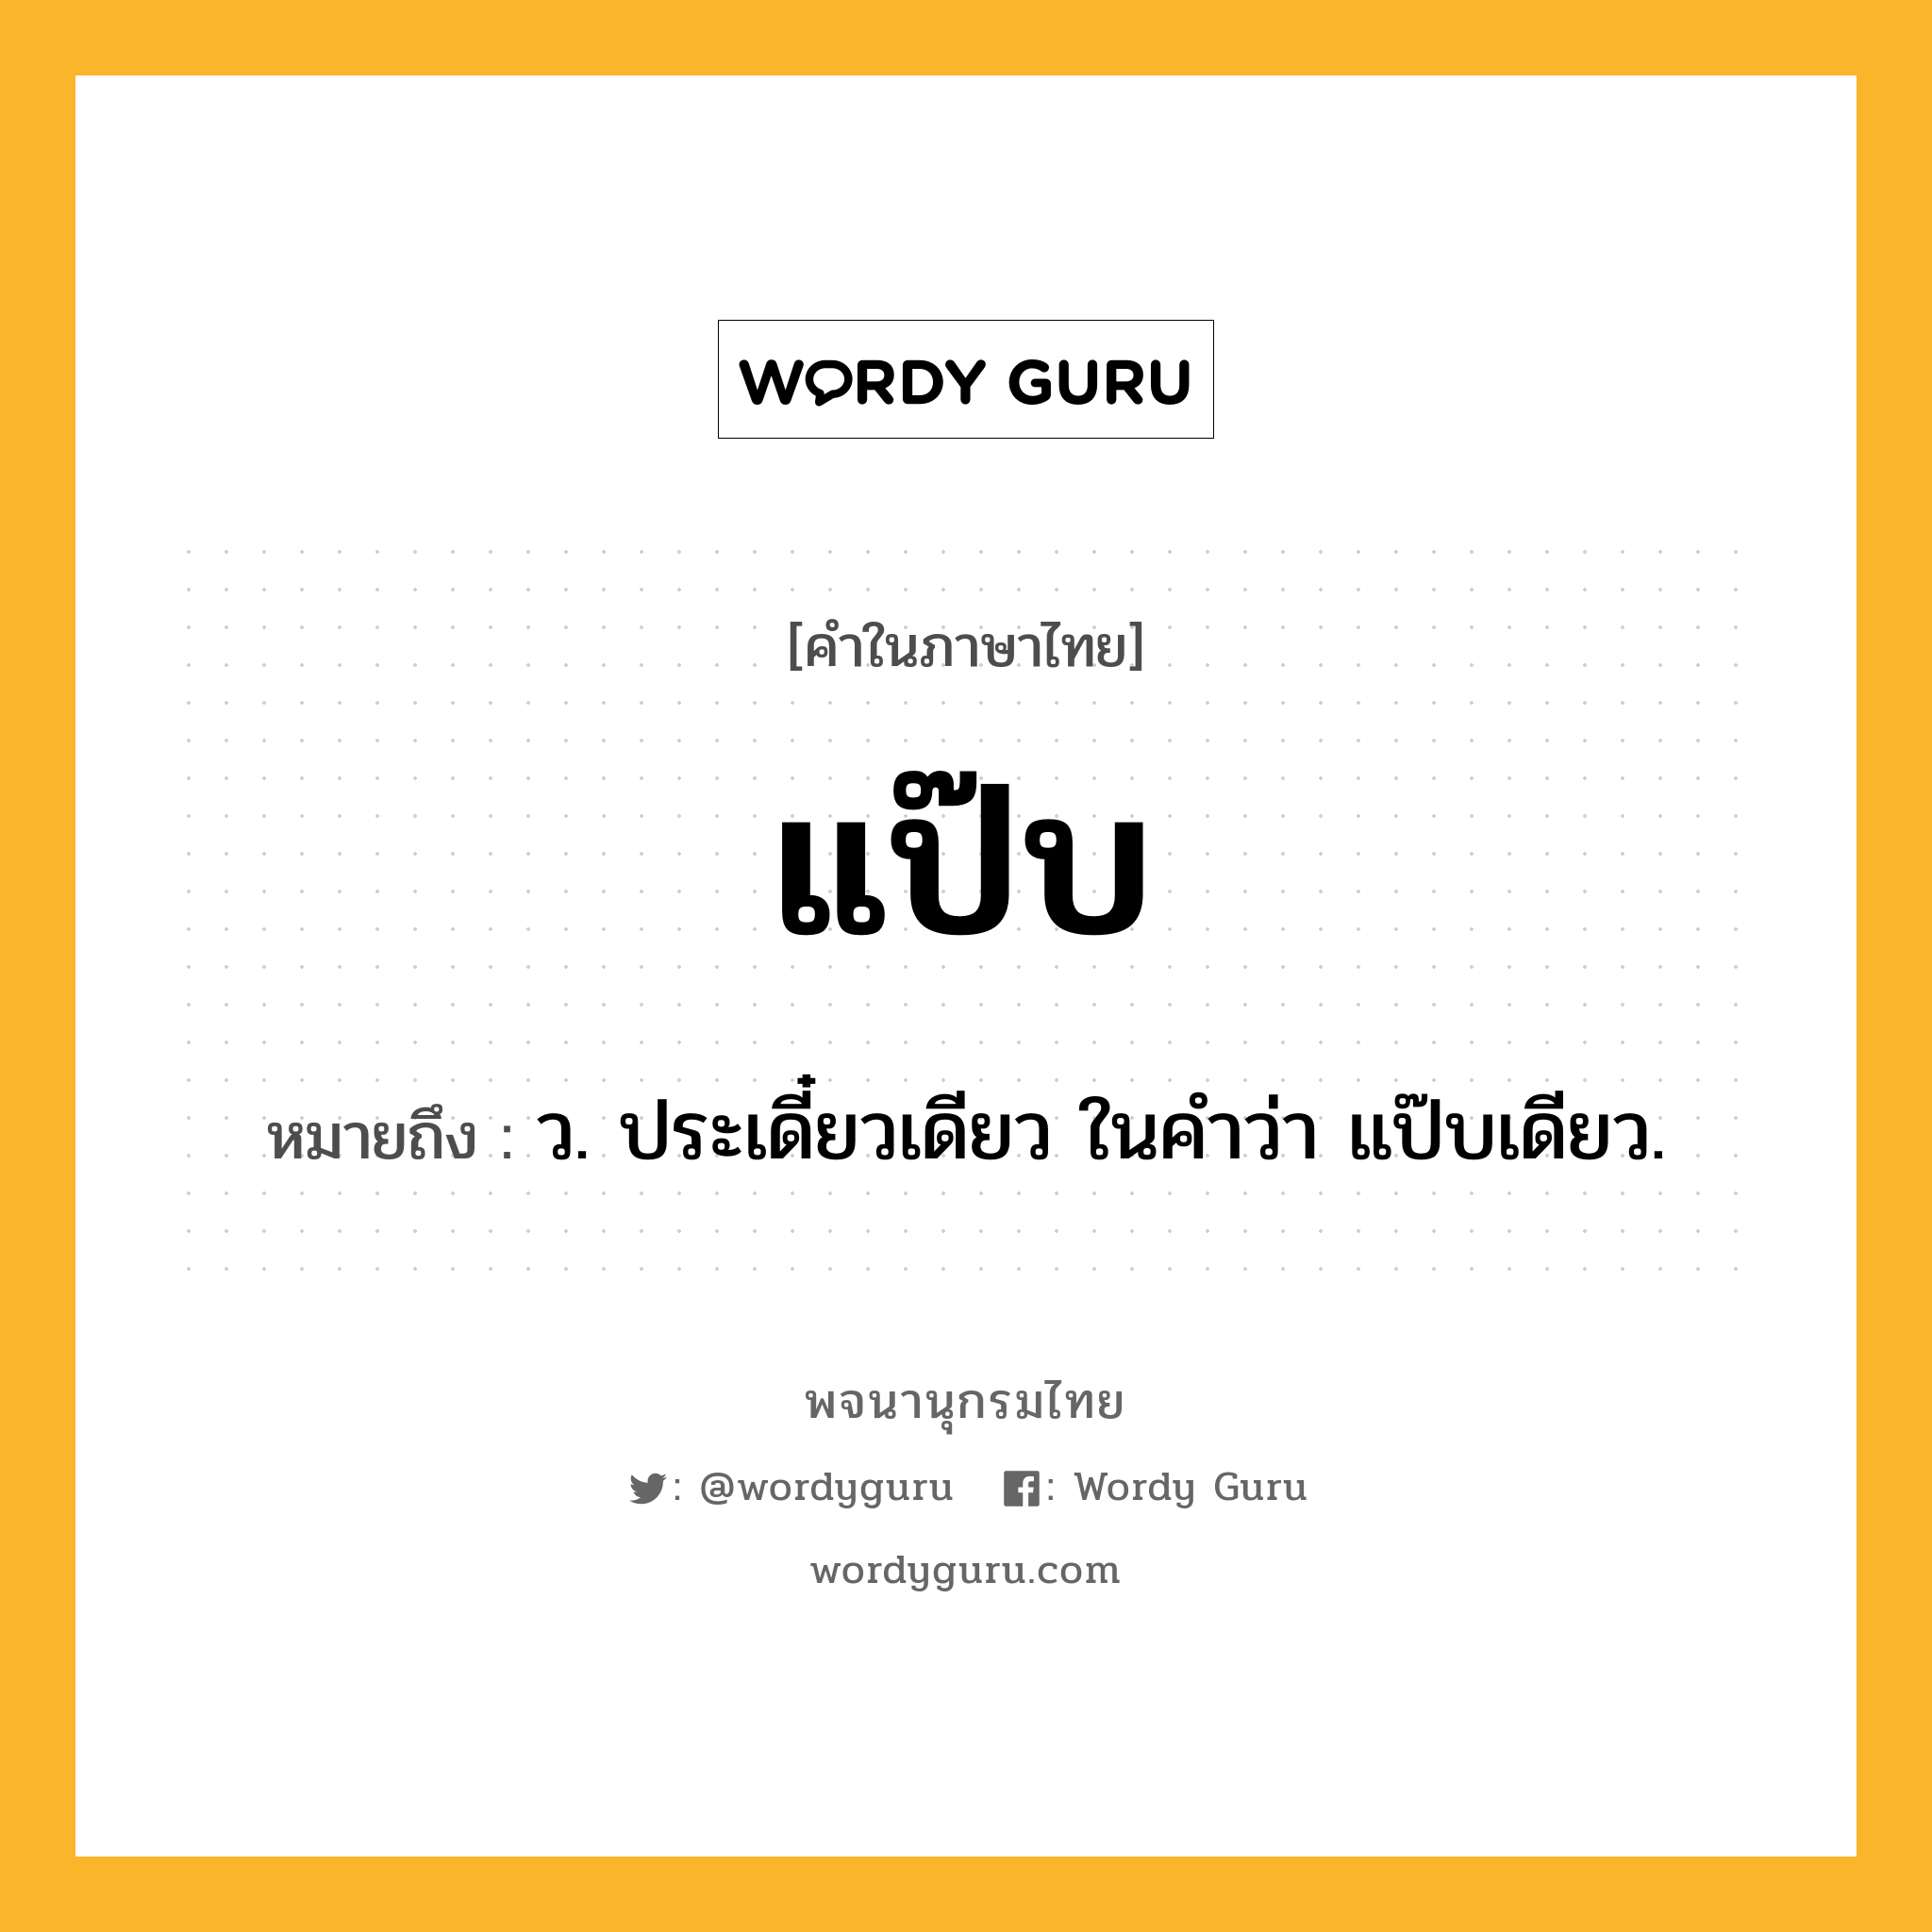 แป๊บ หมายถึงอะไร?, คำในภาษาไทย แป๊บ หมายถึง ว. ประเดี๋ยวเดียว ในคําว่า แป๊บเดียว.